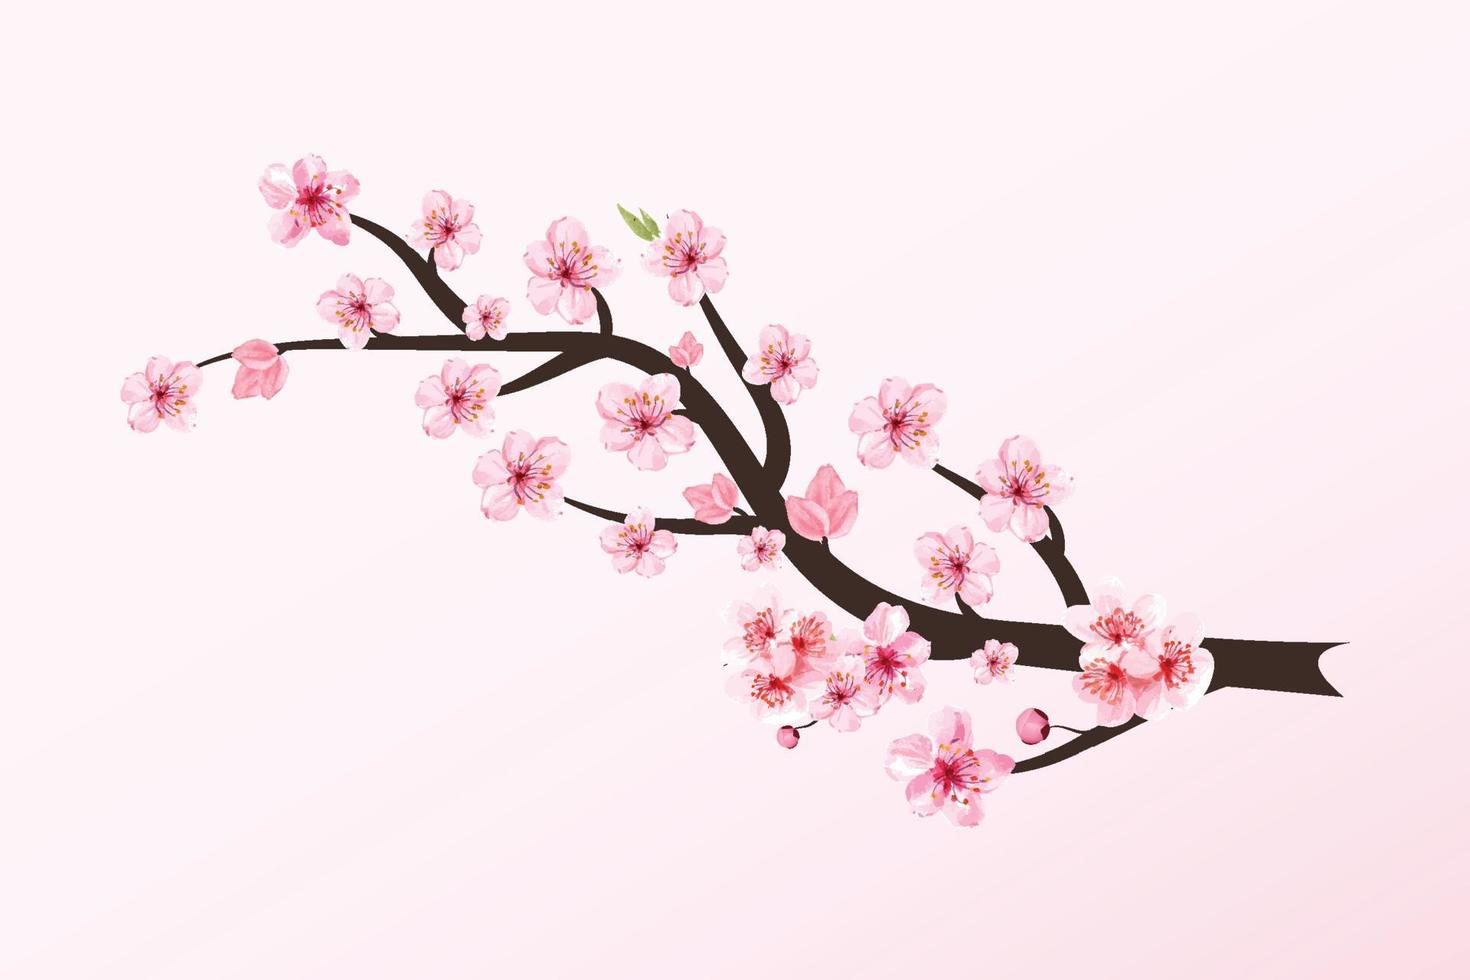 ramo de flor de cerejeira com vetor de flor de sakura. ilustração do ramo de flor de sakura. ramo de cereja com sakura rosa. vetor realista de flor de cerejeira em aquarela. vetor de flor de cerejeira japonesa.